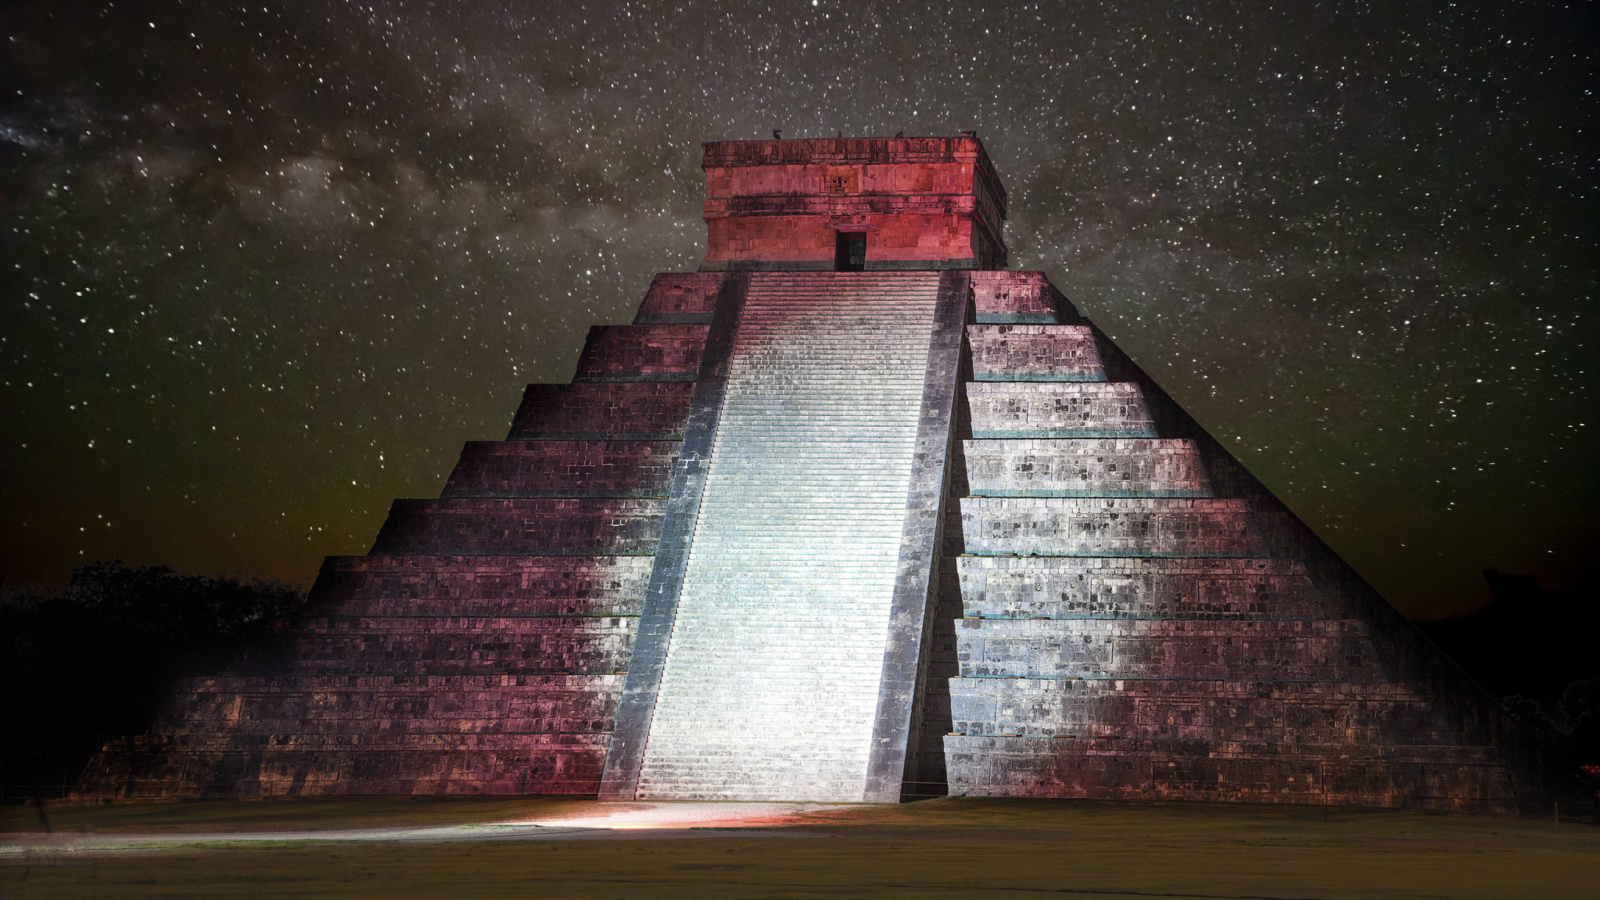 Das Chichen Itza Pyramid in Mexico Wallpaper 1600x900